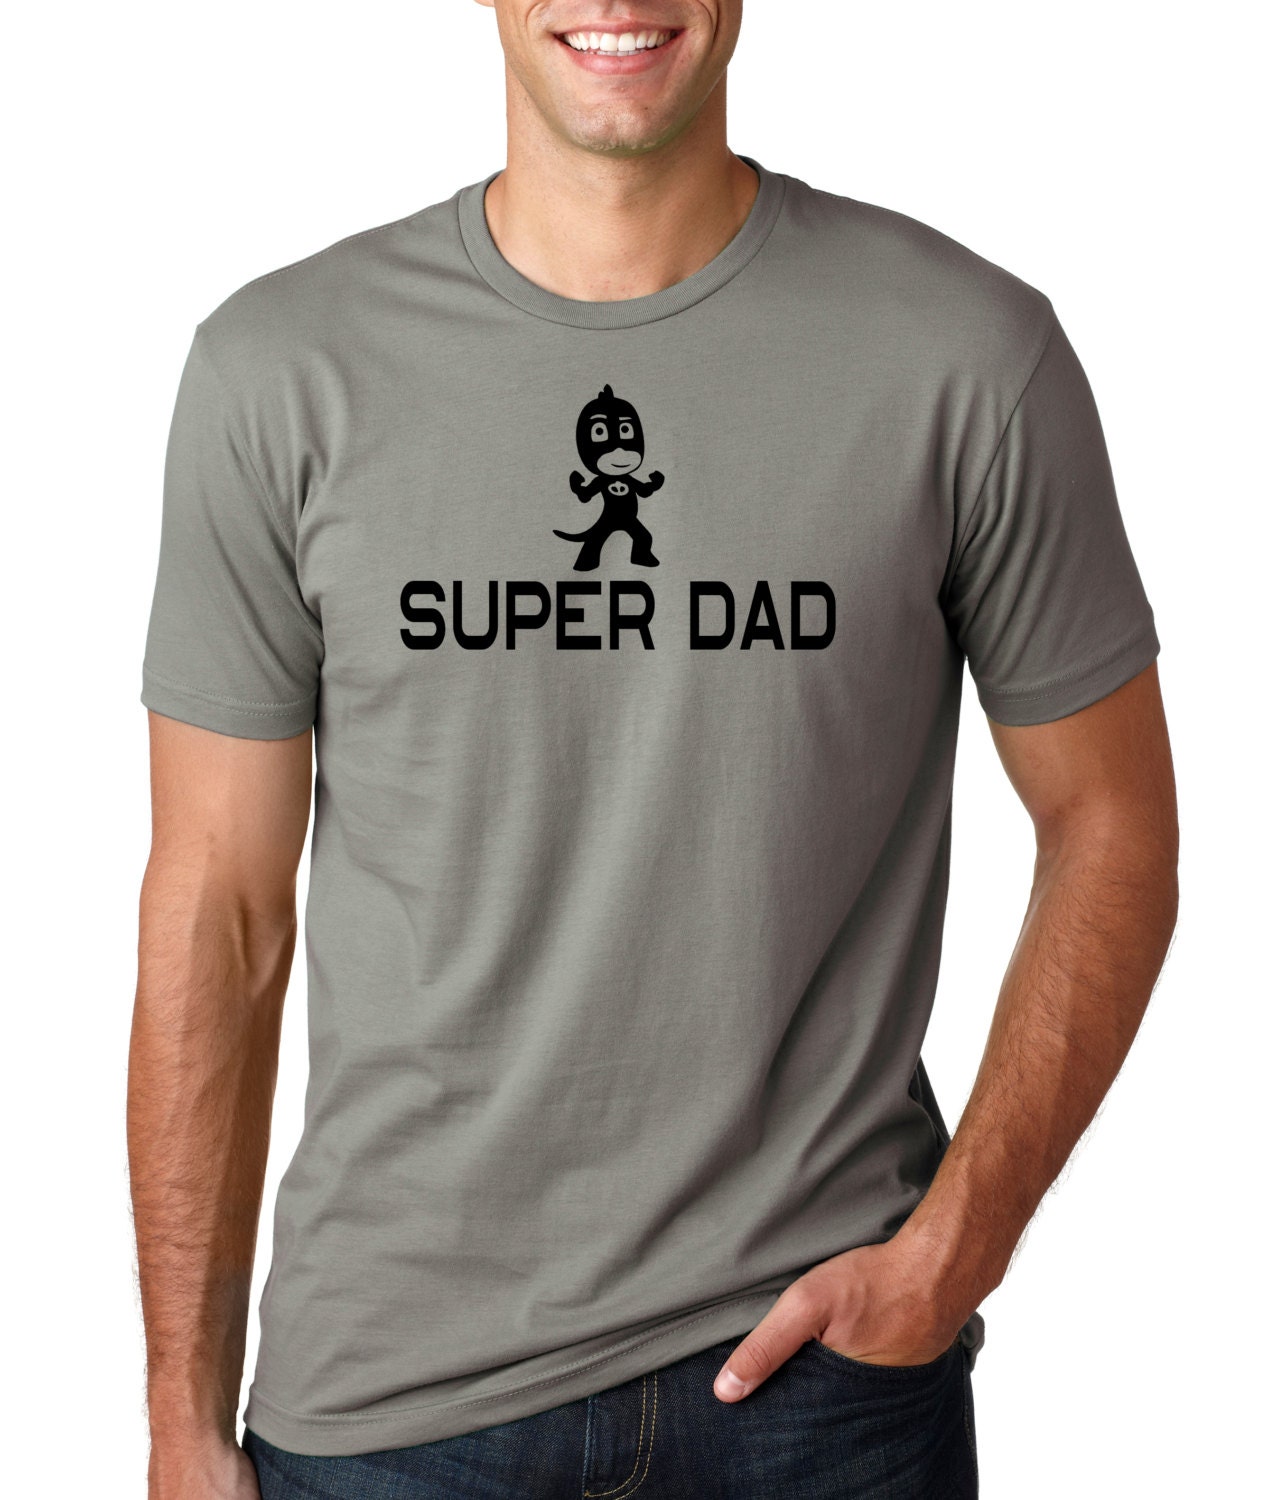 Super Dad Shirt Pj Masks Pj Mask Pj Masks Shirts PJ Mask | Etsy